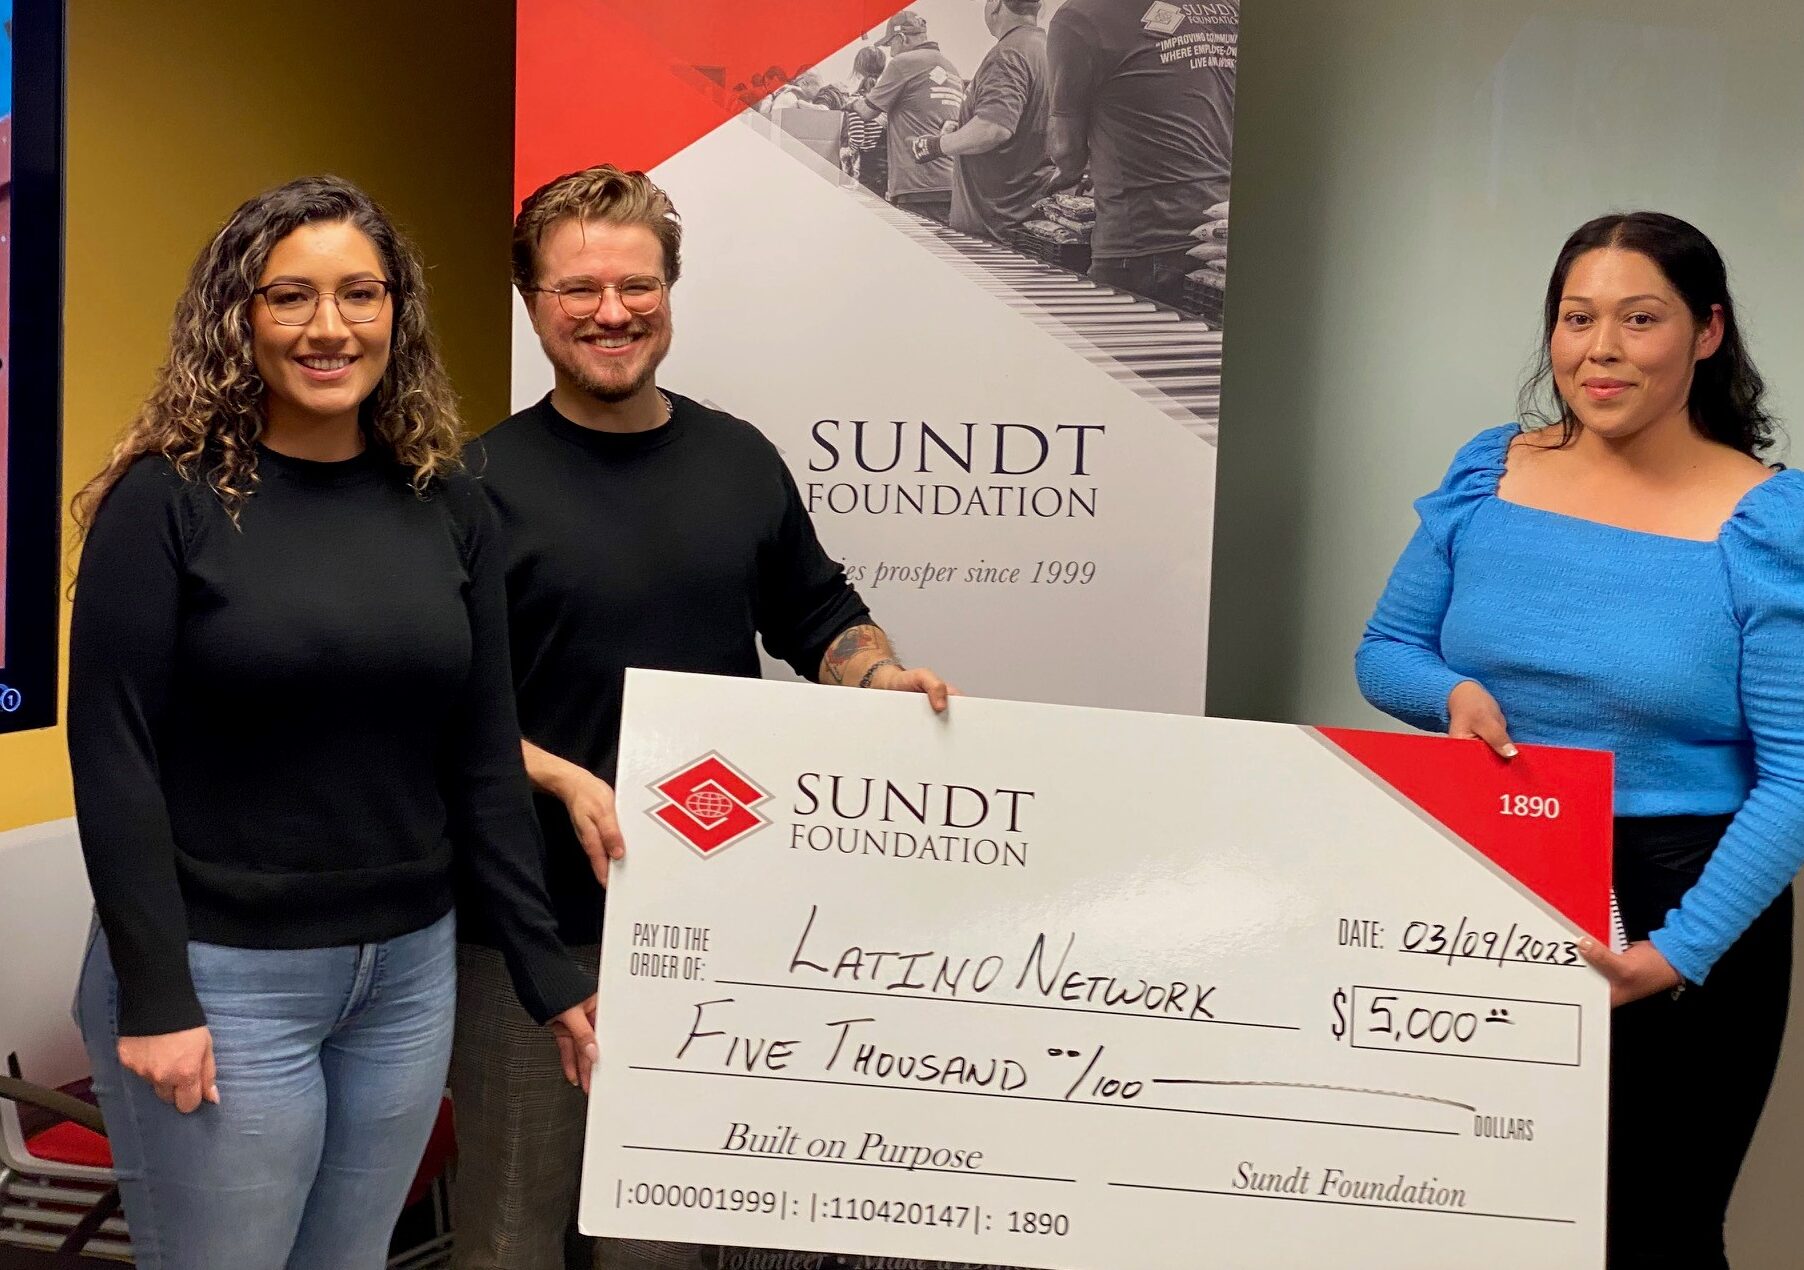 Sundt Employees donate $5,000 to the Northwest region